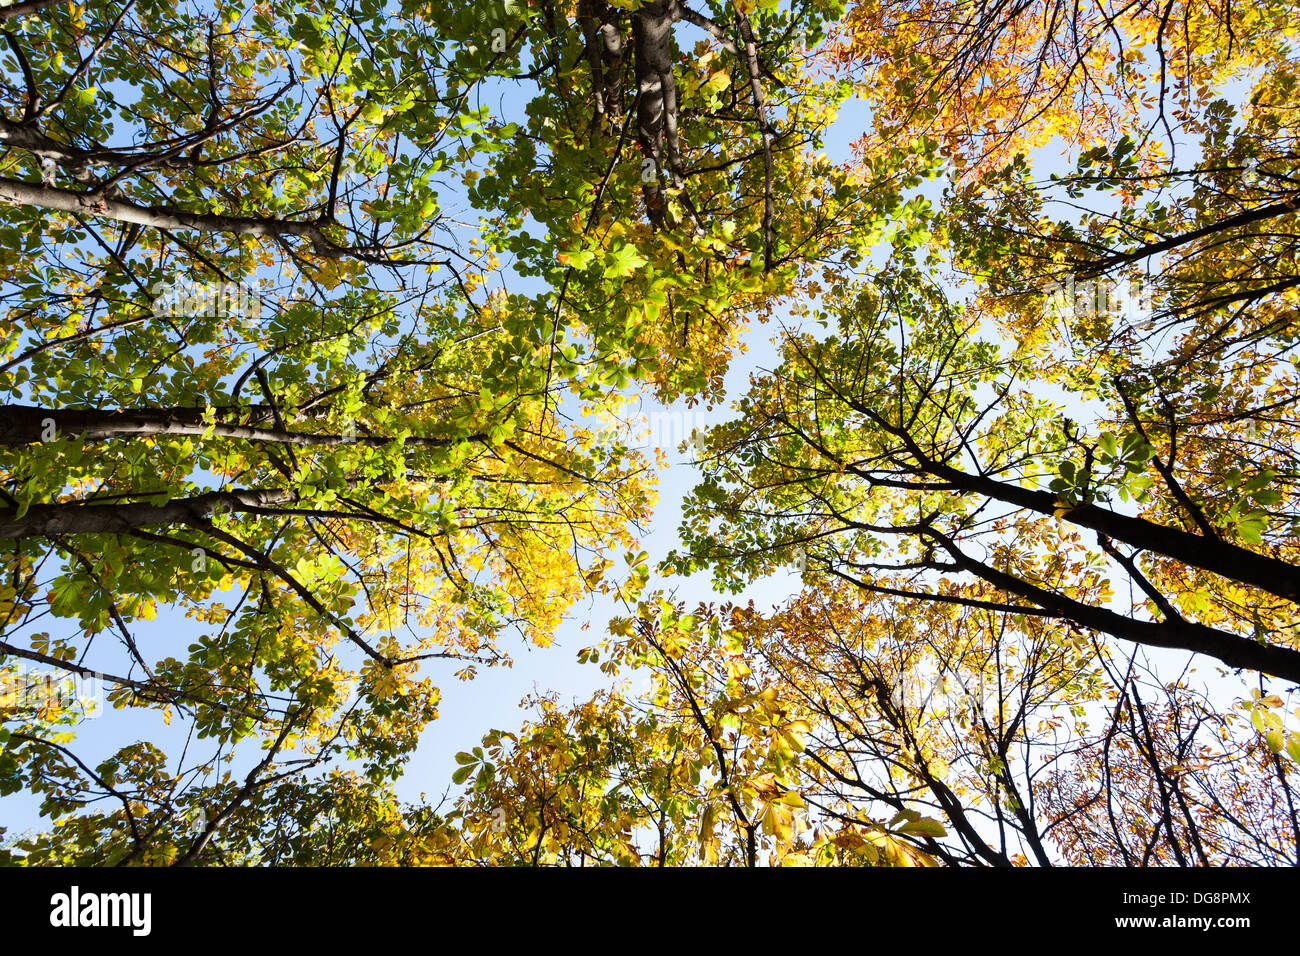 autumn trees on blue sky Stock Photo